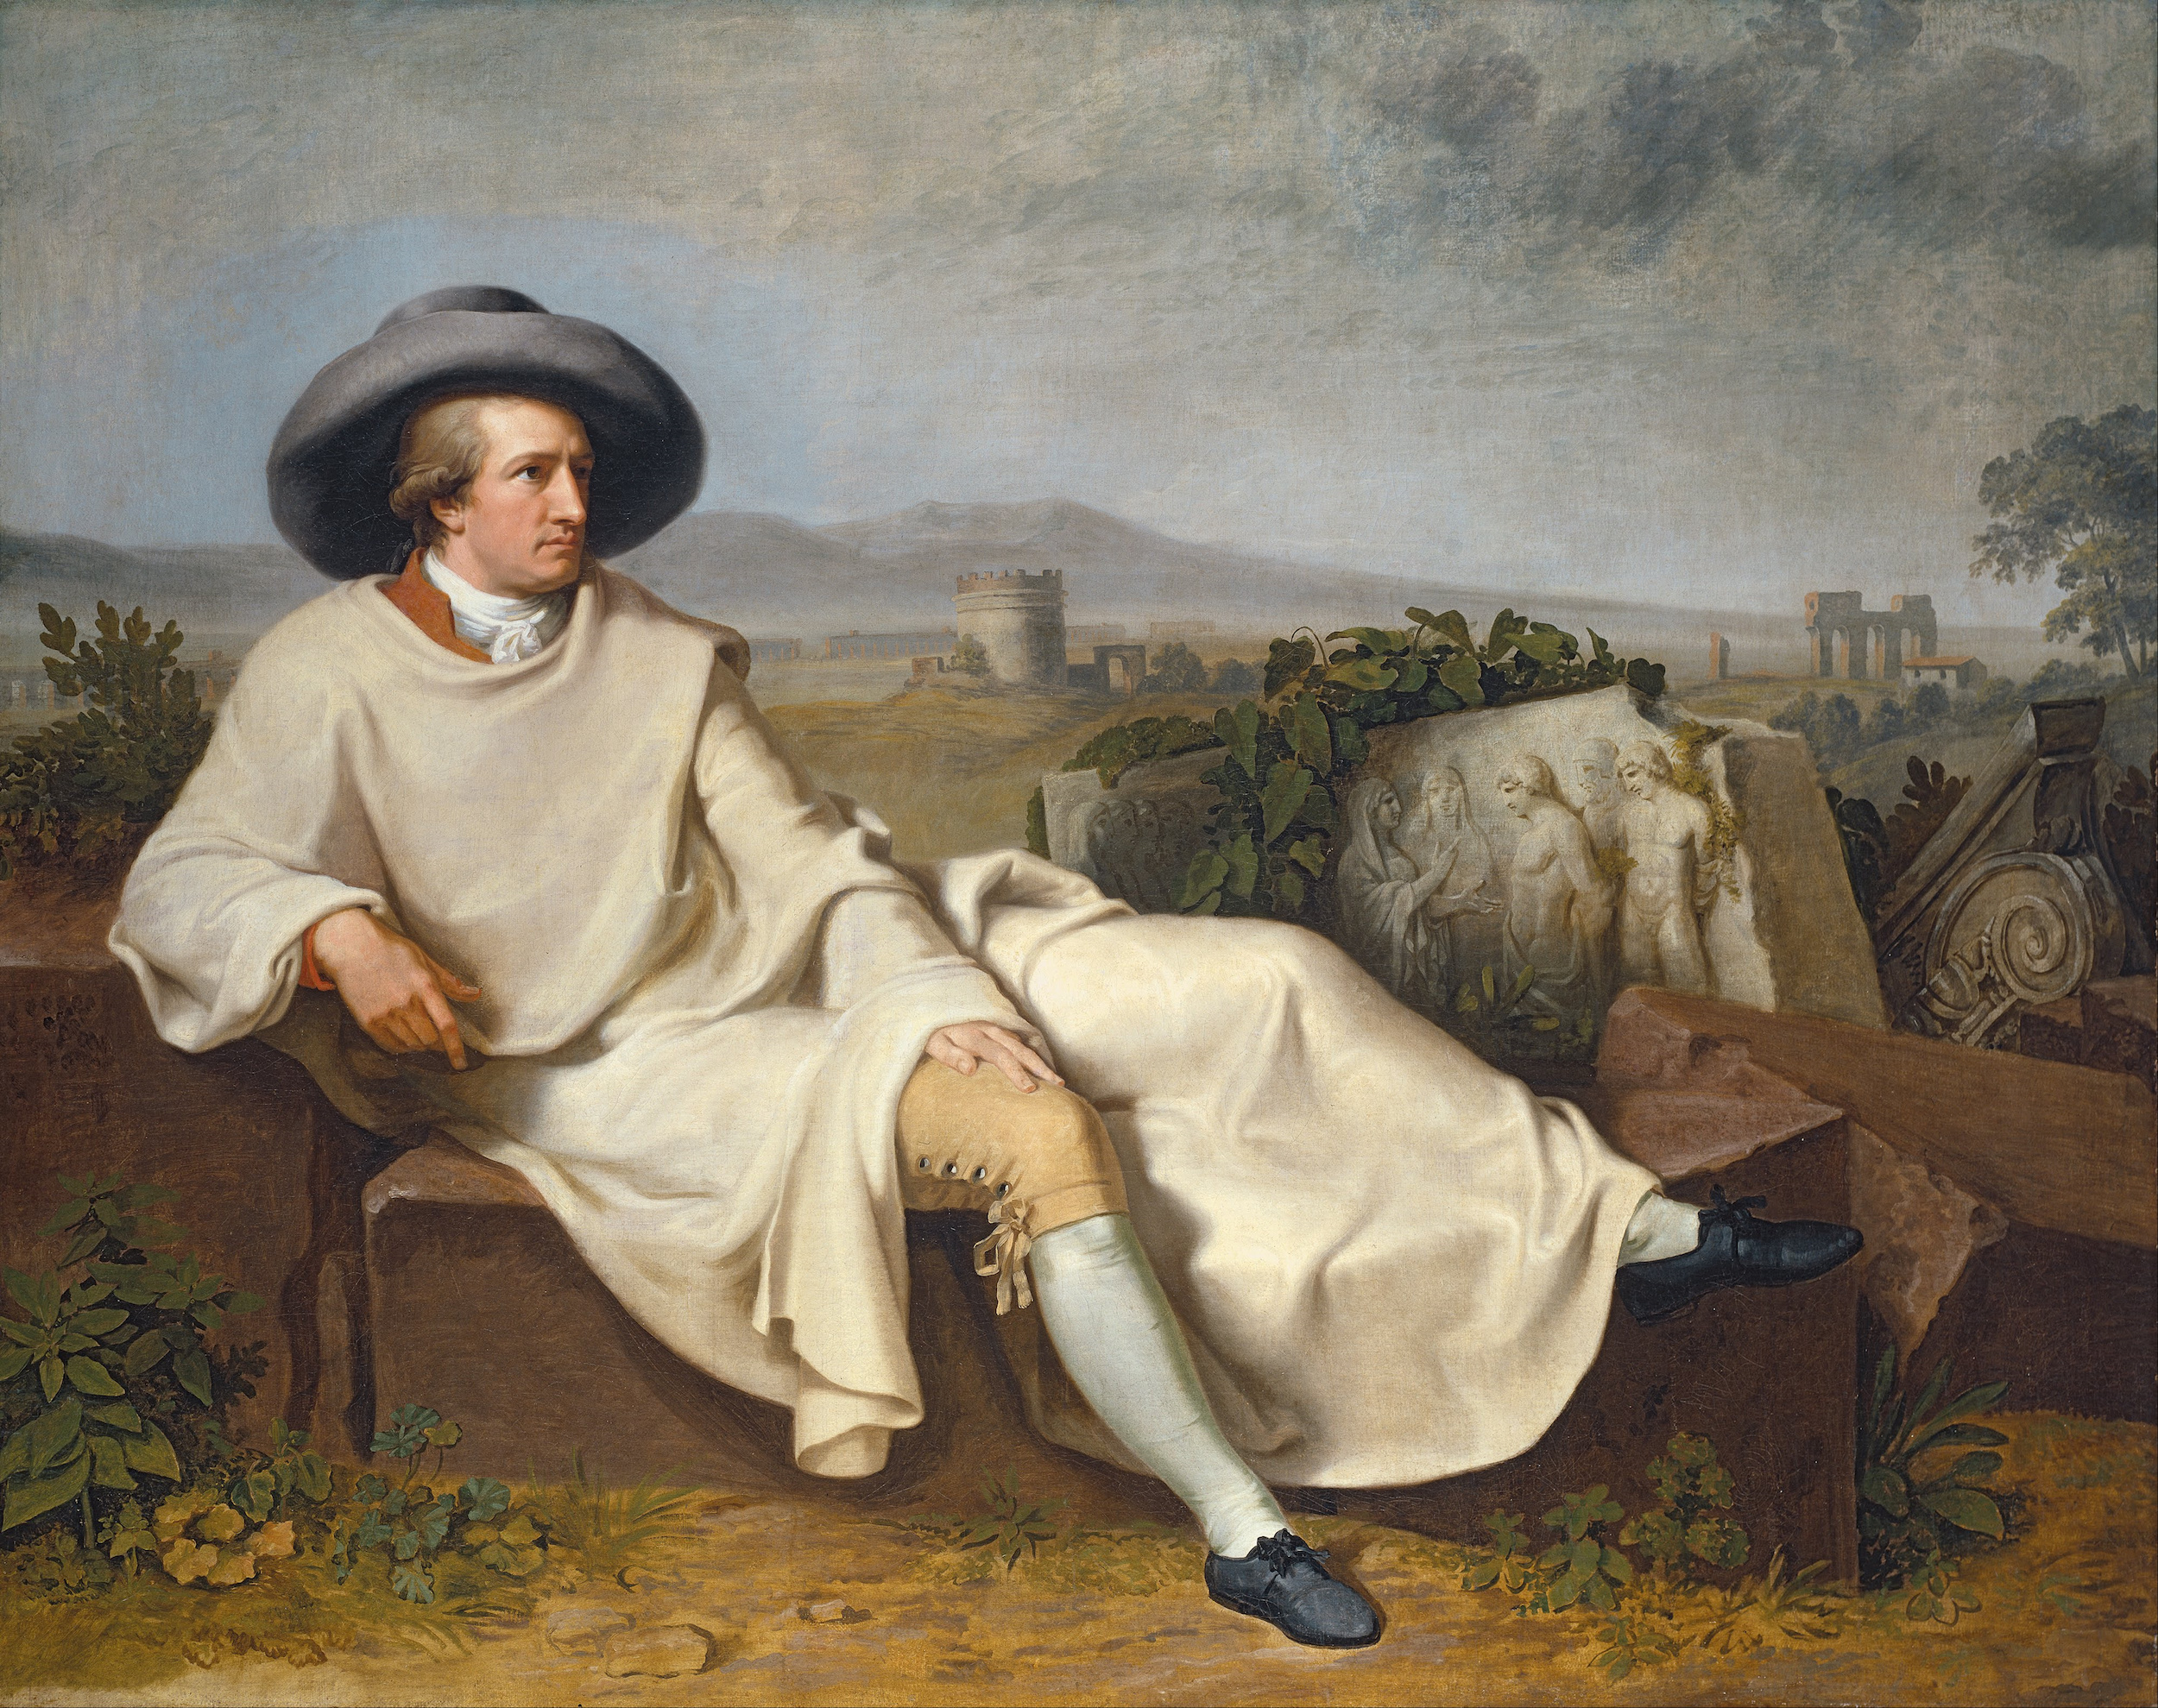 歌德在罗马平原上 by 约翰 海因里希.威廉.蒂施拜因 - 1787 